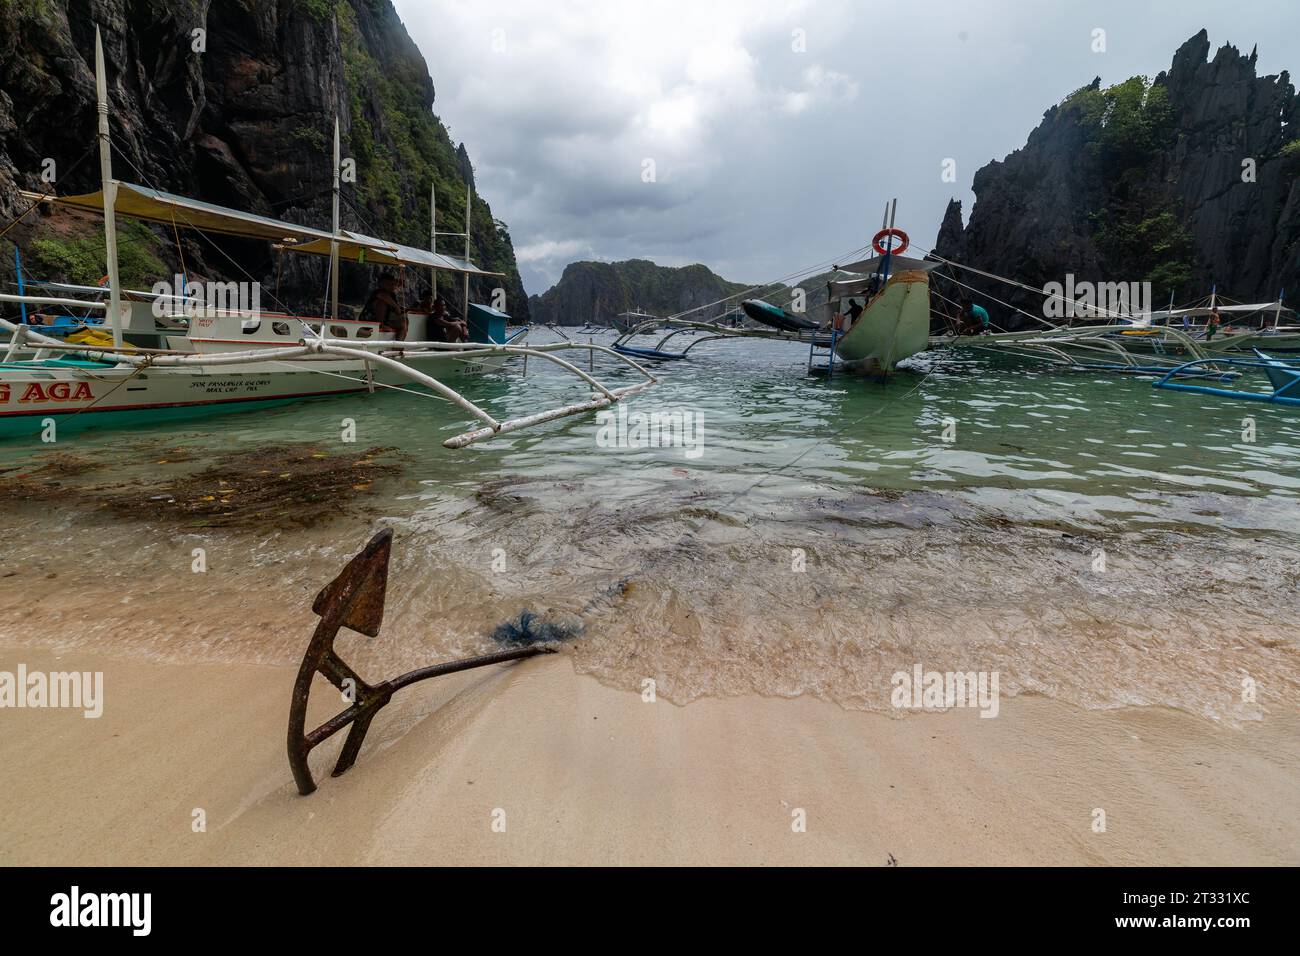 Tradizionali battelli filippini banca con balenieri ancorati sulla spiaggia nella baia circondata da pinnacoli di roccia Foto Stock